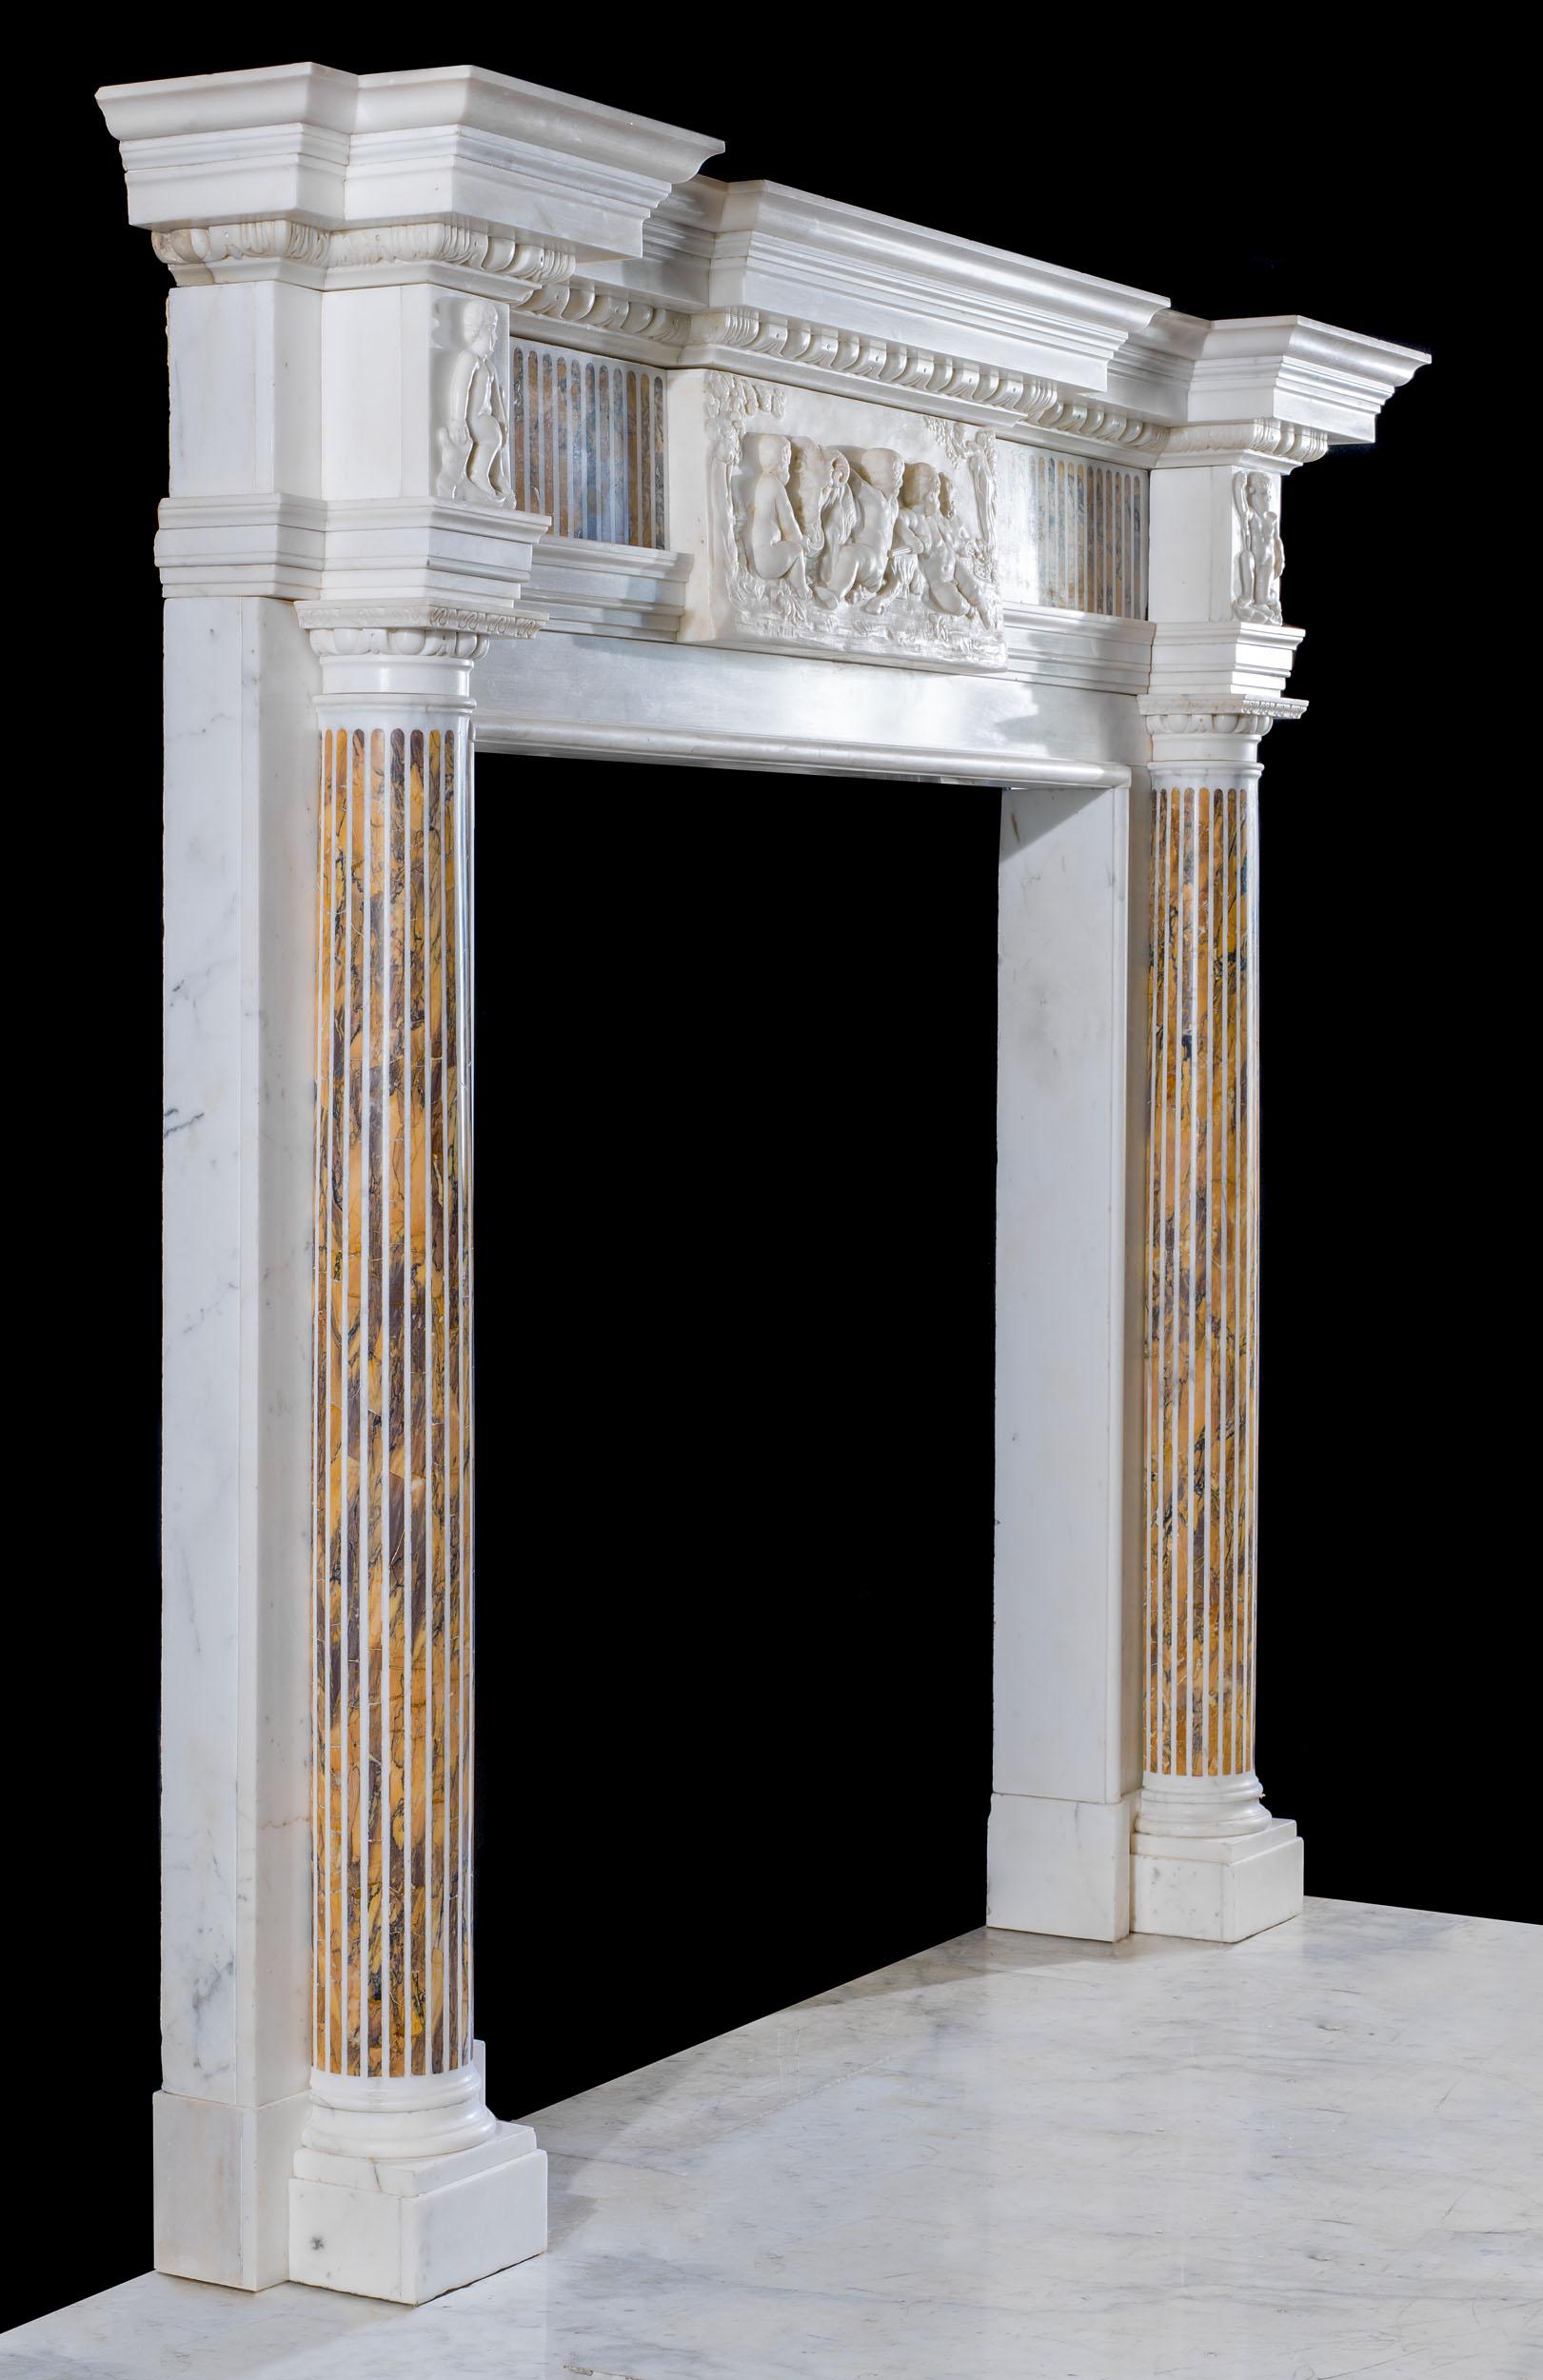 Ein feiner und prächtiger neoklassizistischer Kamin aus statuarischem Marmor mit Einlagen aus Siena-Marmor. Das kühn geschnitzte Regal an der Vorderseite befindet sich über einem hochreliefierten Ei-und-Pfeil-Unterregal und einem fein geriffelten